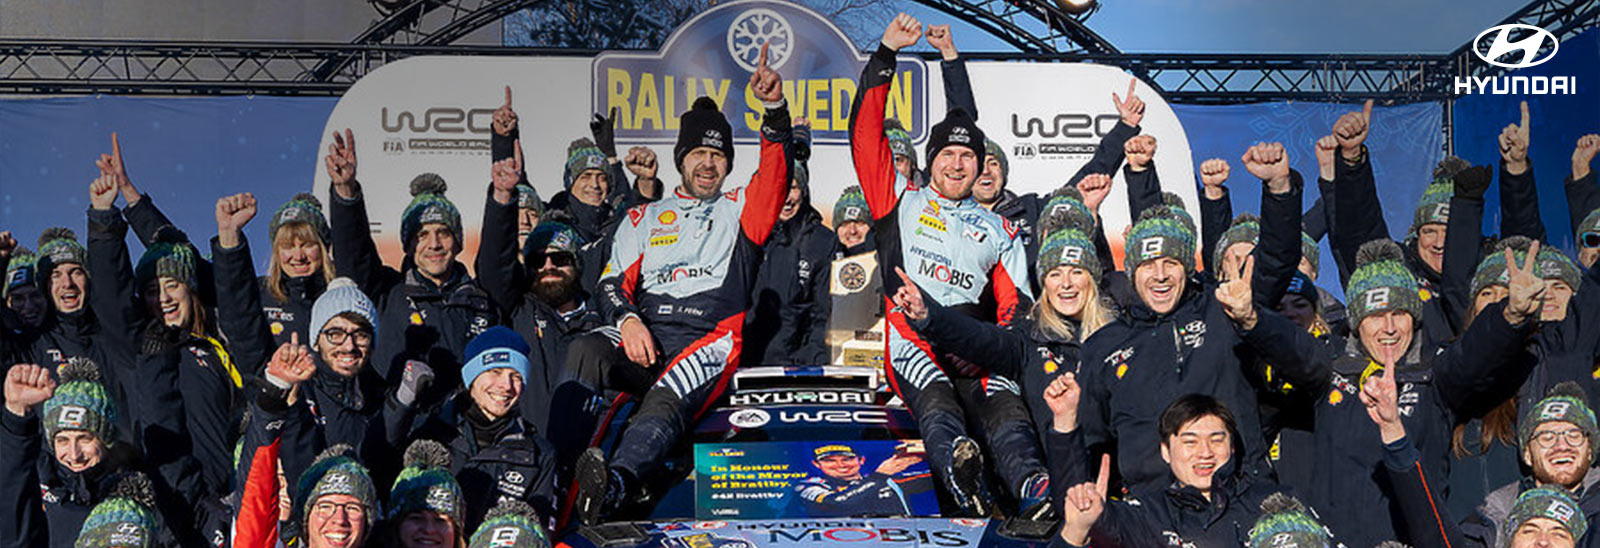 Dulce éxito en el WRC de Hyundai